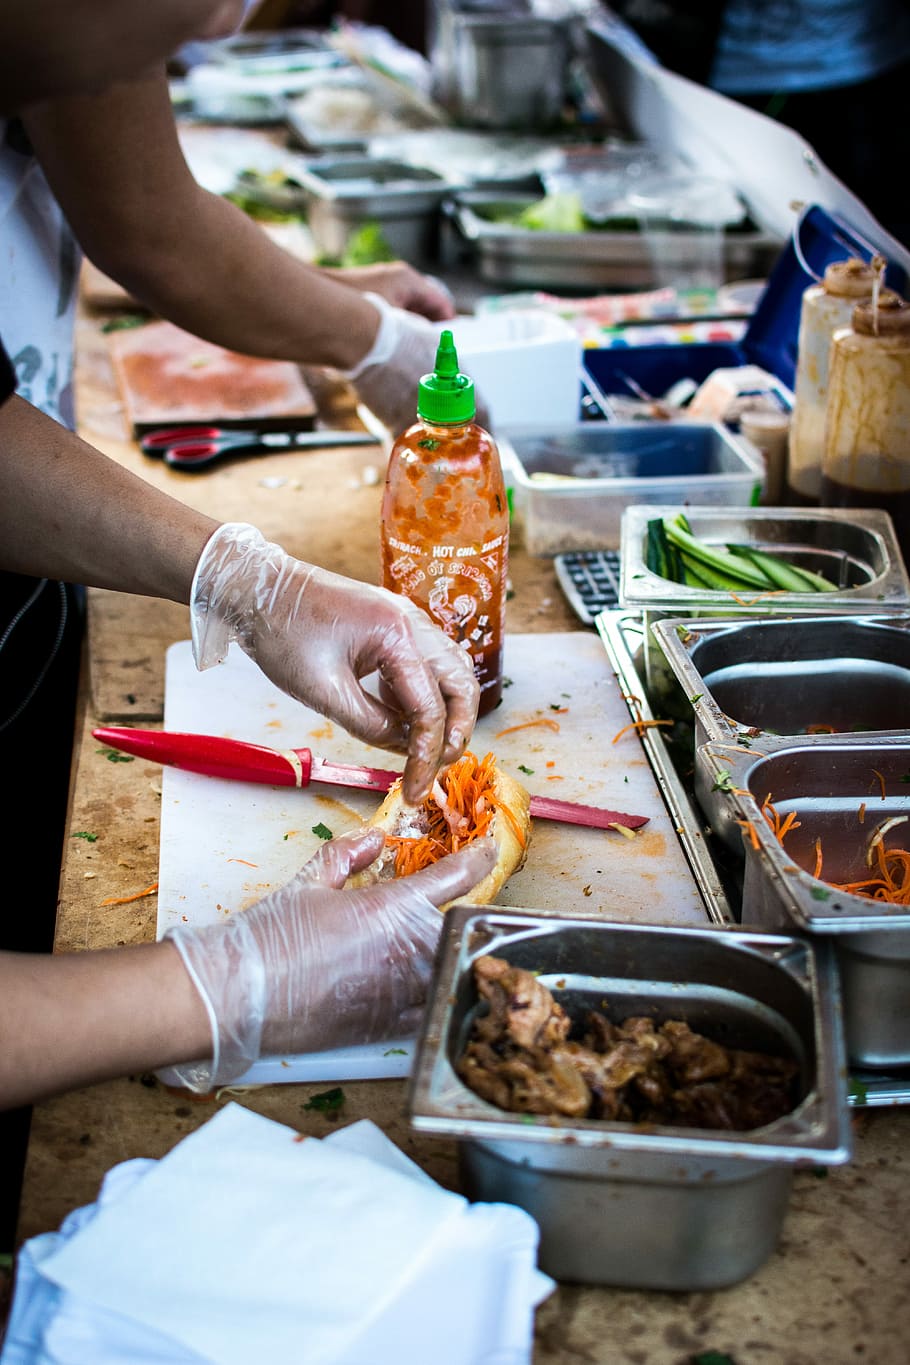 вьетнамский бань ми, фестиваль еды, вьетнамский, бань ми, багет, руки, уличная еда, еда, люди, свежесть